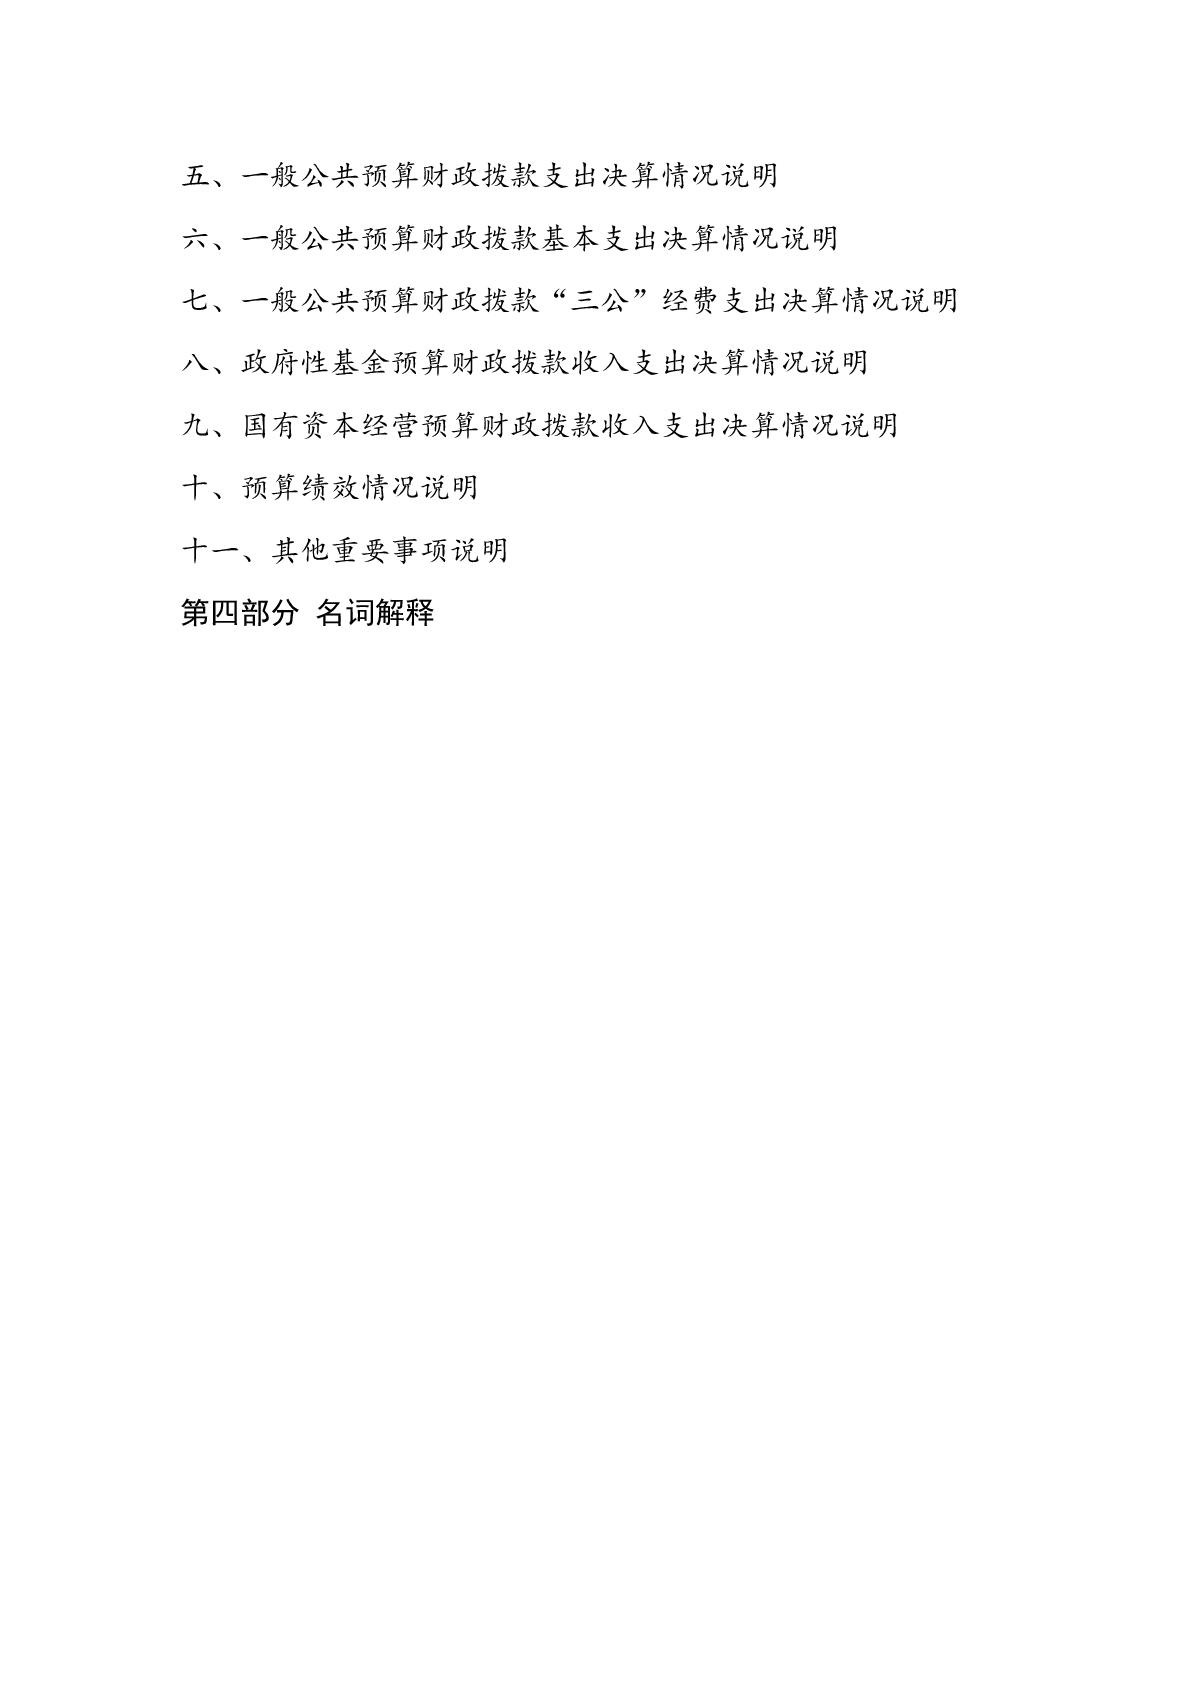 015上海市嘉定区清水路小学2020年度决算-003.jpg